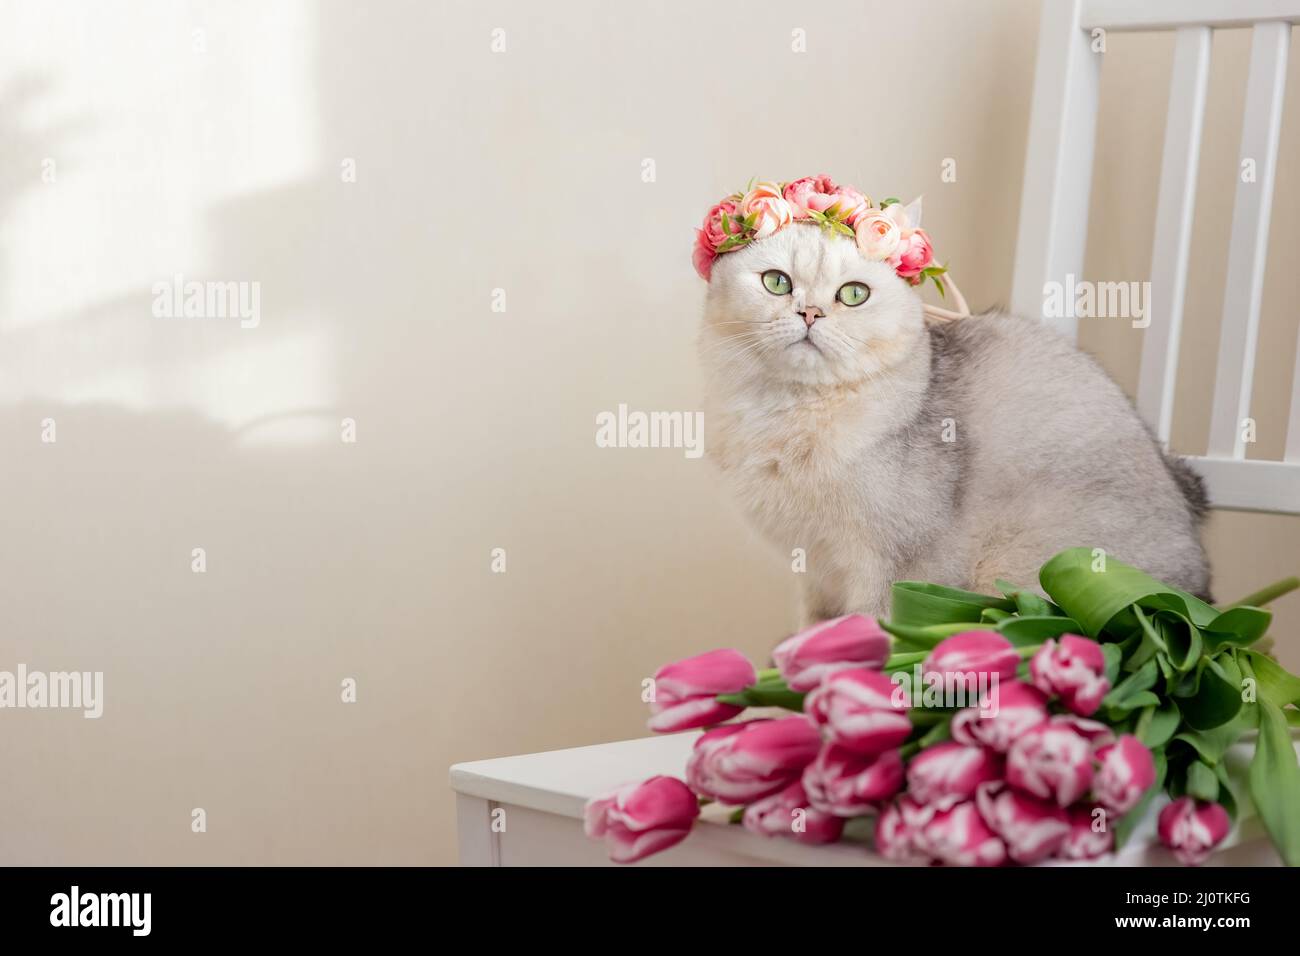 Un bel gatto bianco in una corona di fiori rosa, si siede con bouquet di tulipani rosa, su uno sfondo chiaro. Foto Stock